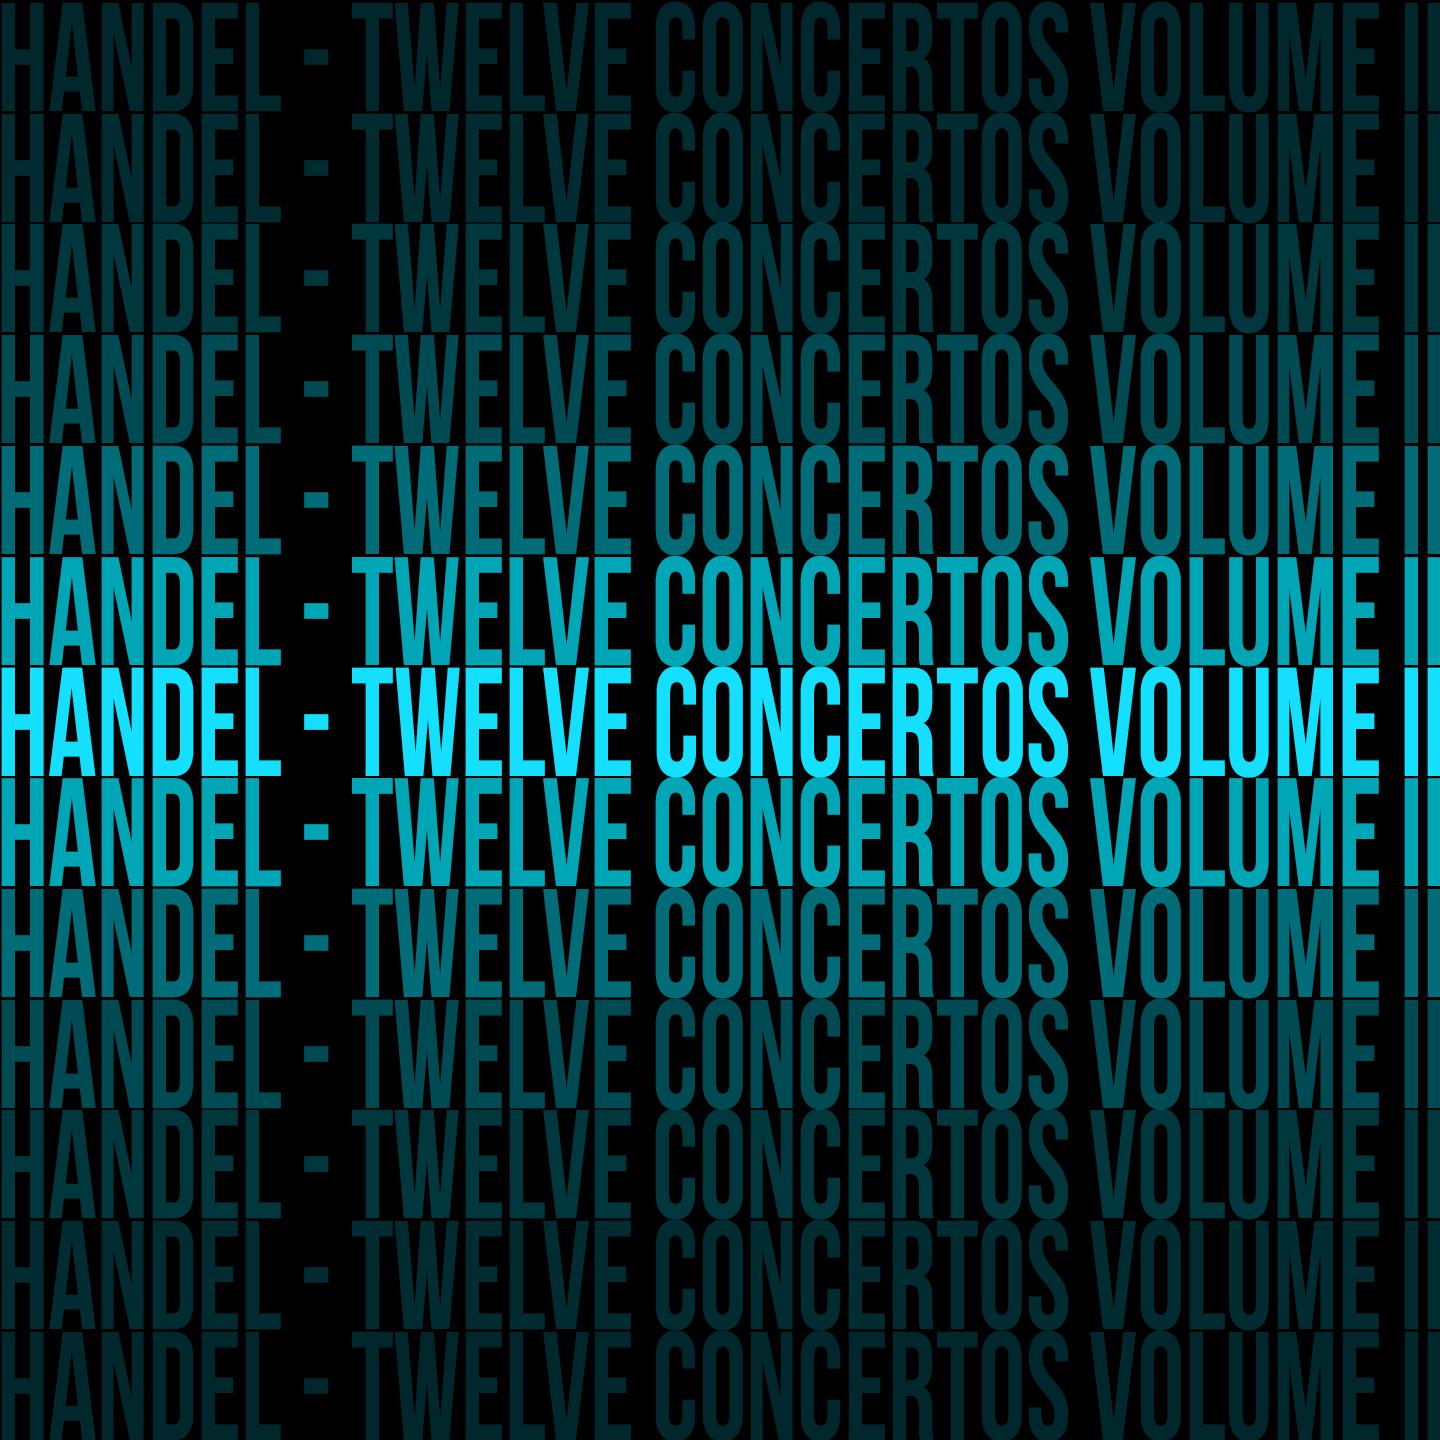 Handel - Twelve Concertos Volume II